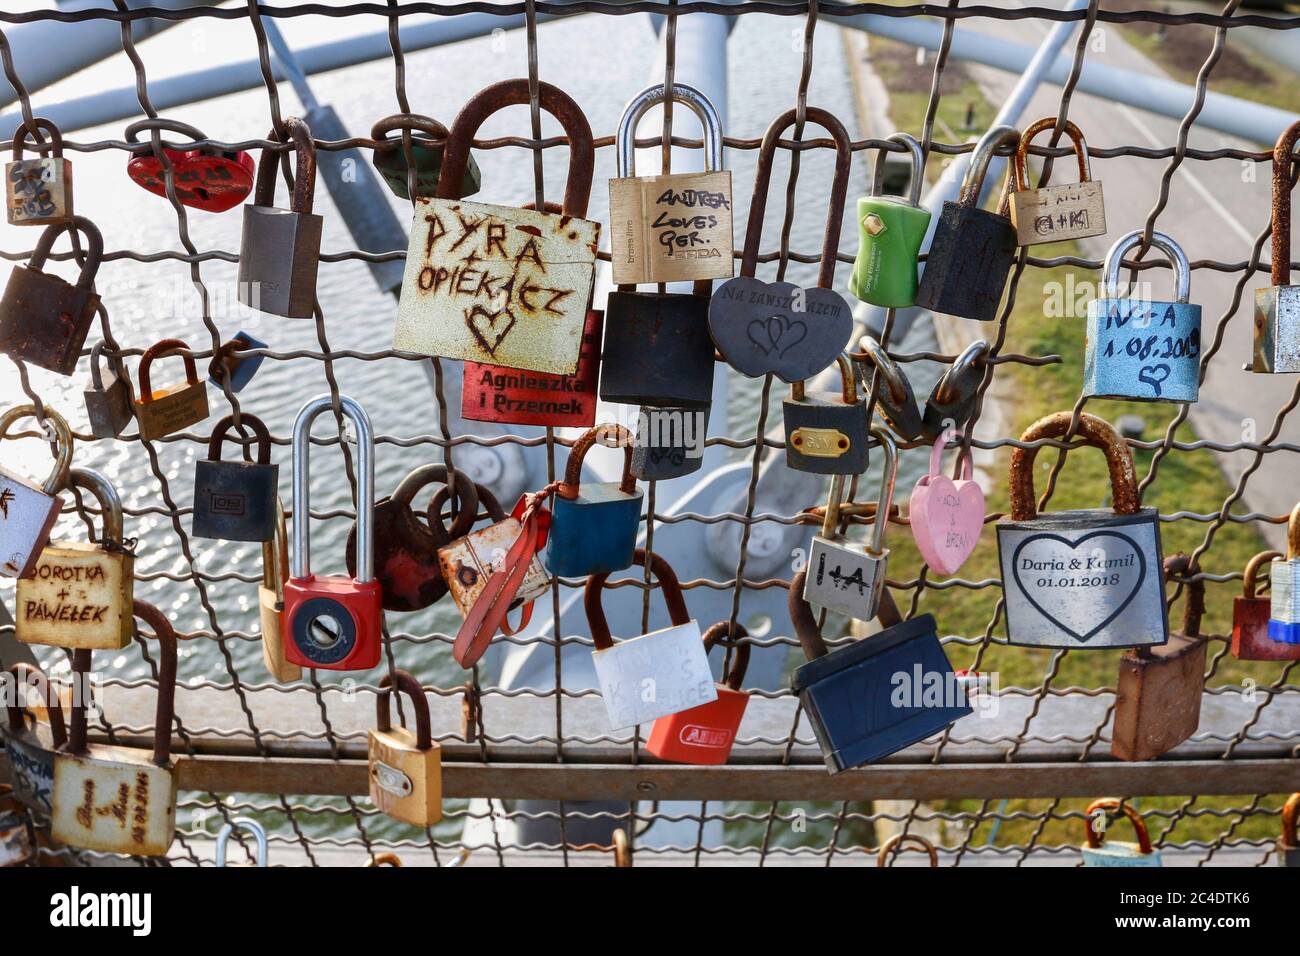 The Kladka Bernatka- bridge of love with love padlocks in Krakow, Poland. Stock Photo